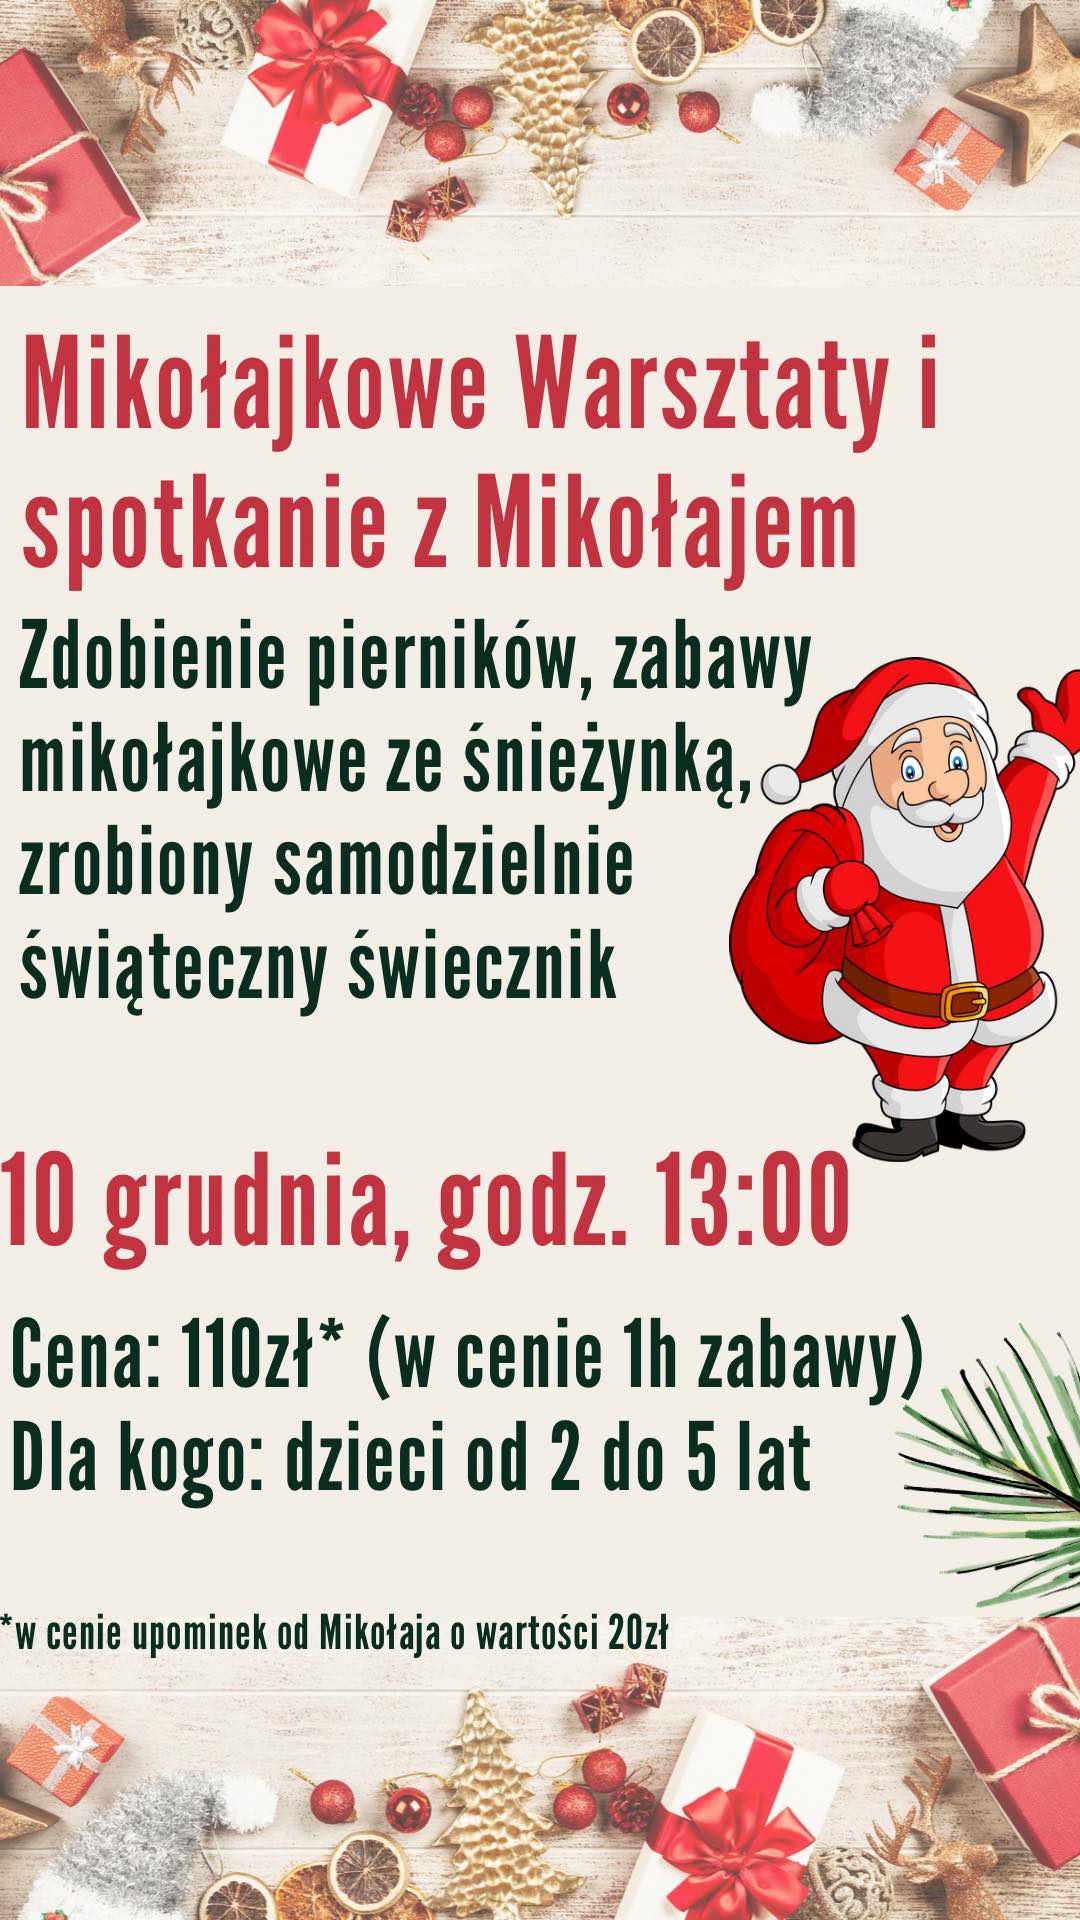 Zajęcia dla dzieci Mikołajkowe Warsztaty - Spotkanie z Mikołajem w Warszawie